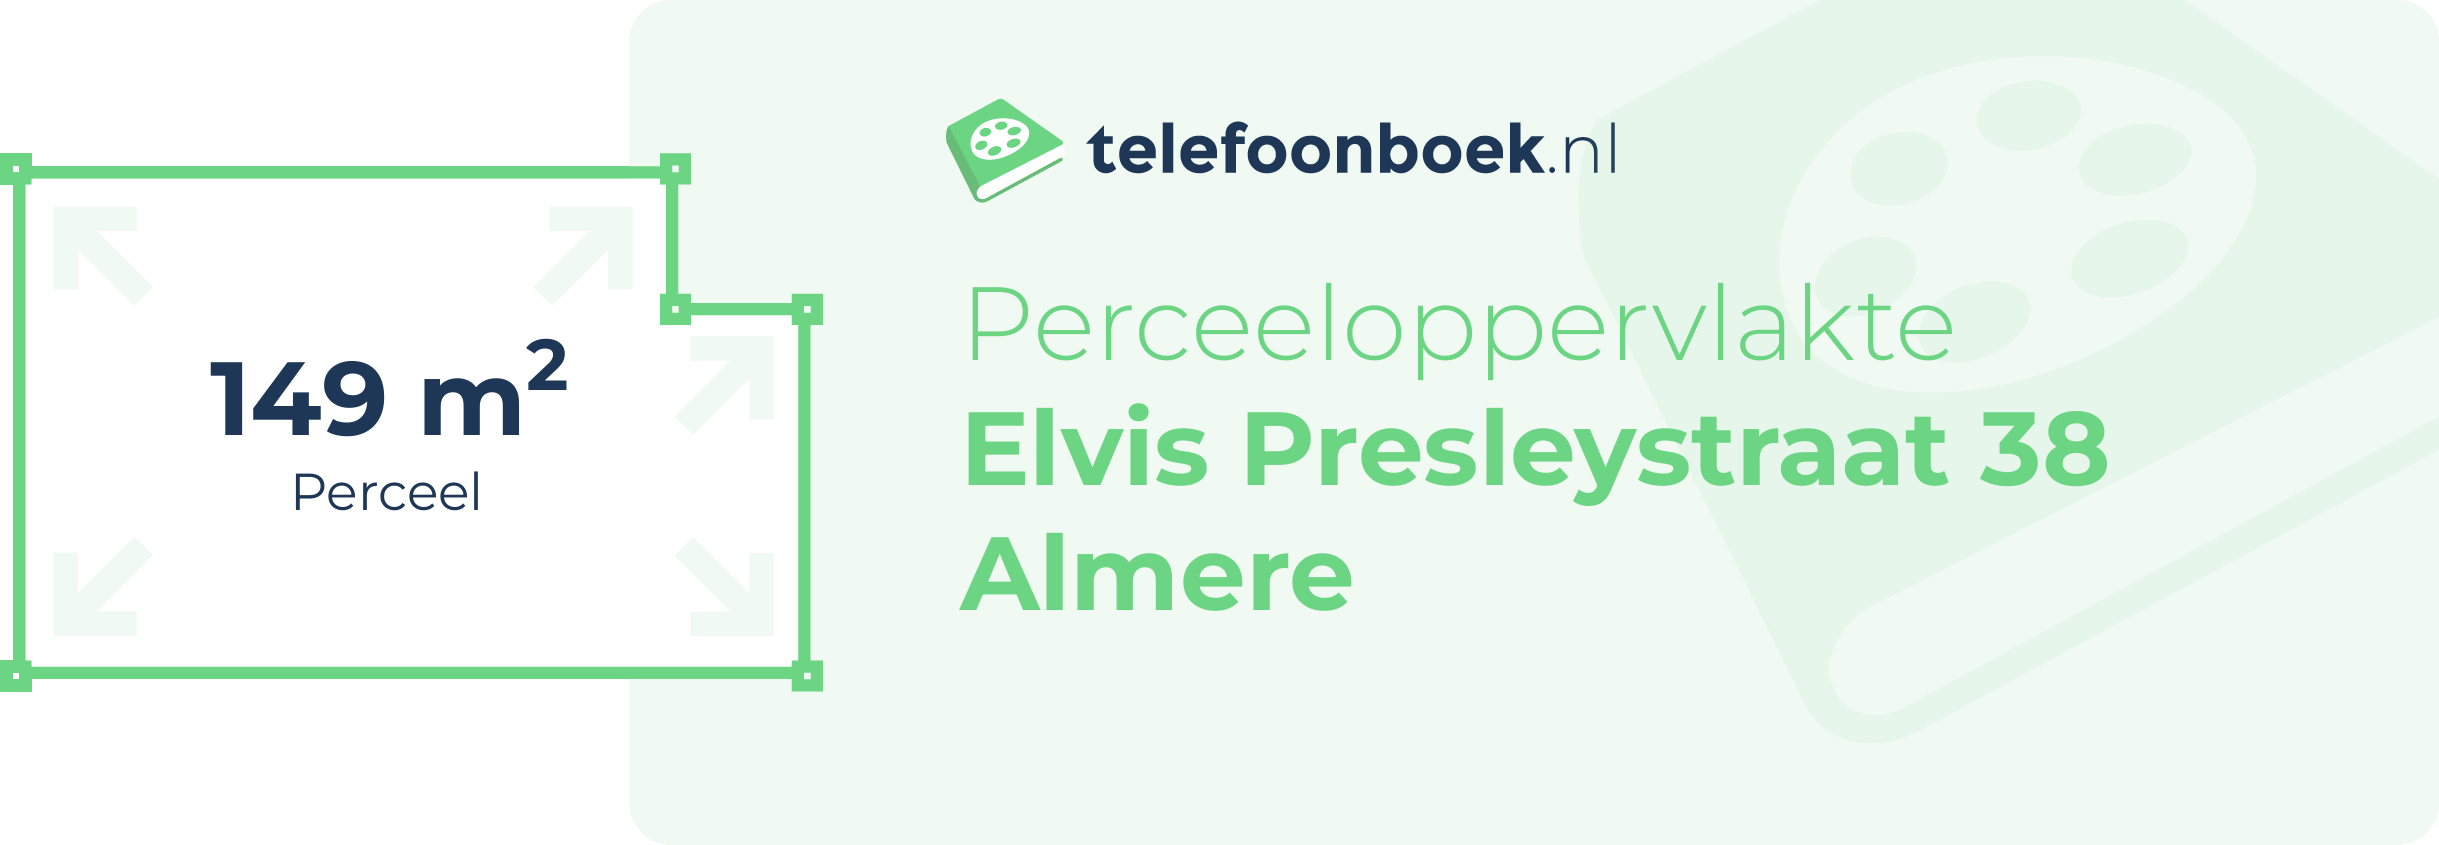 Perceeloppervlakte Elvis Presleystraat 38 Almere